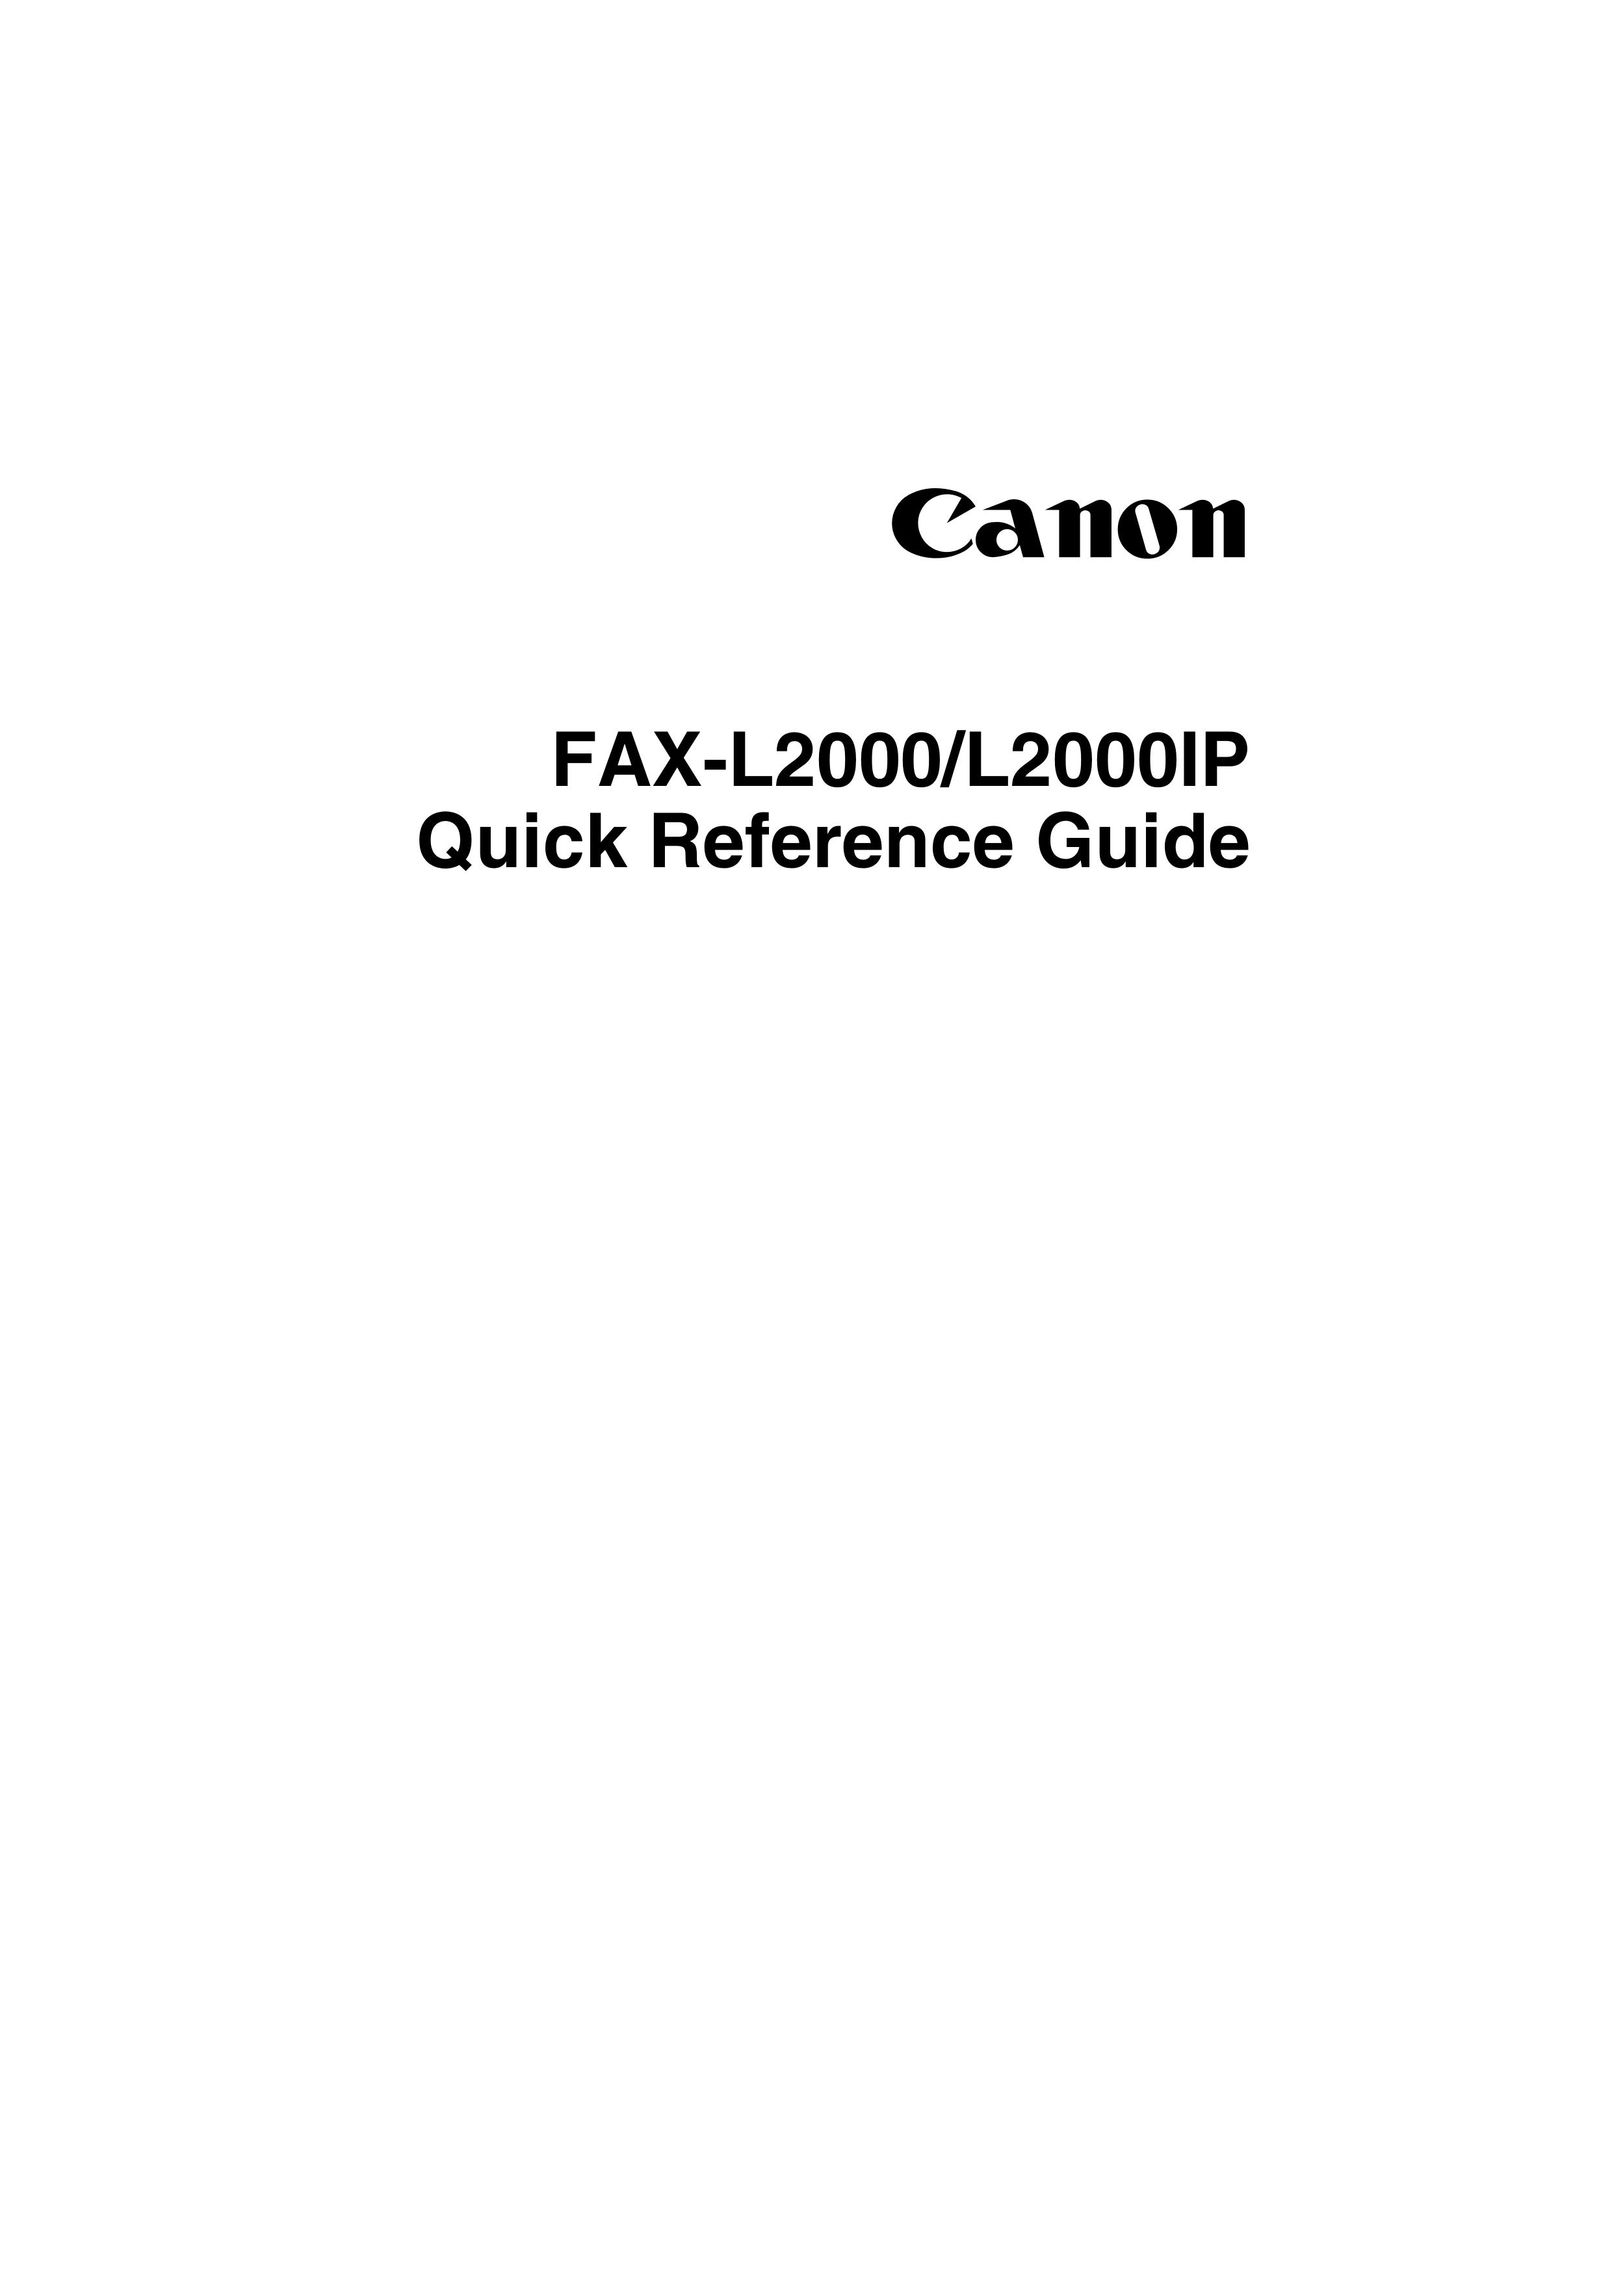 Canon FAX-L2000 Fax Machine User Manual